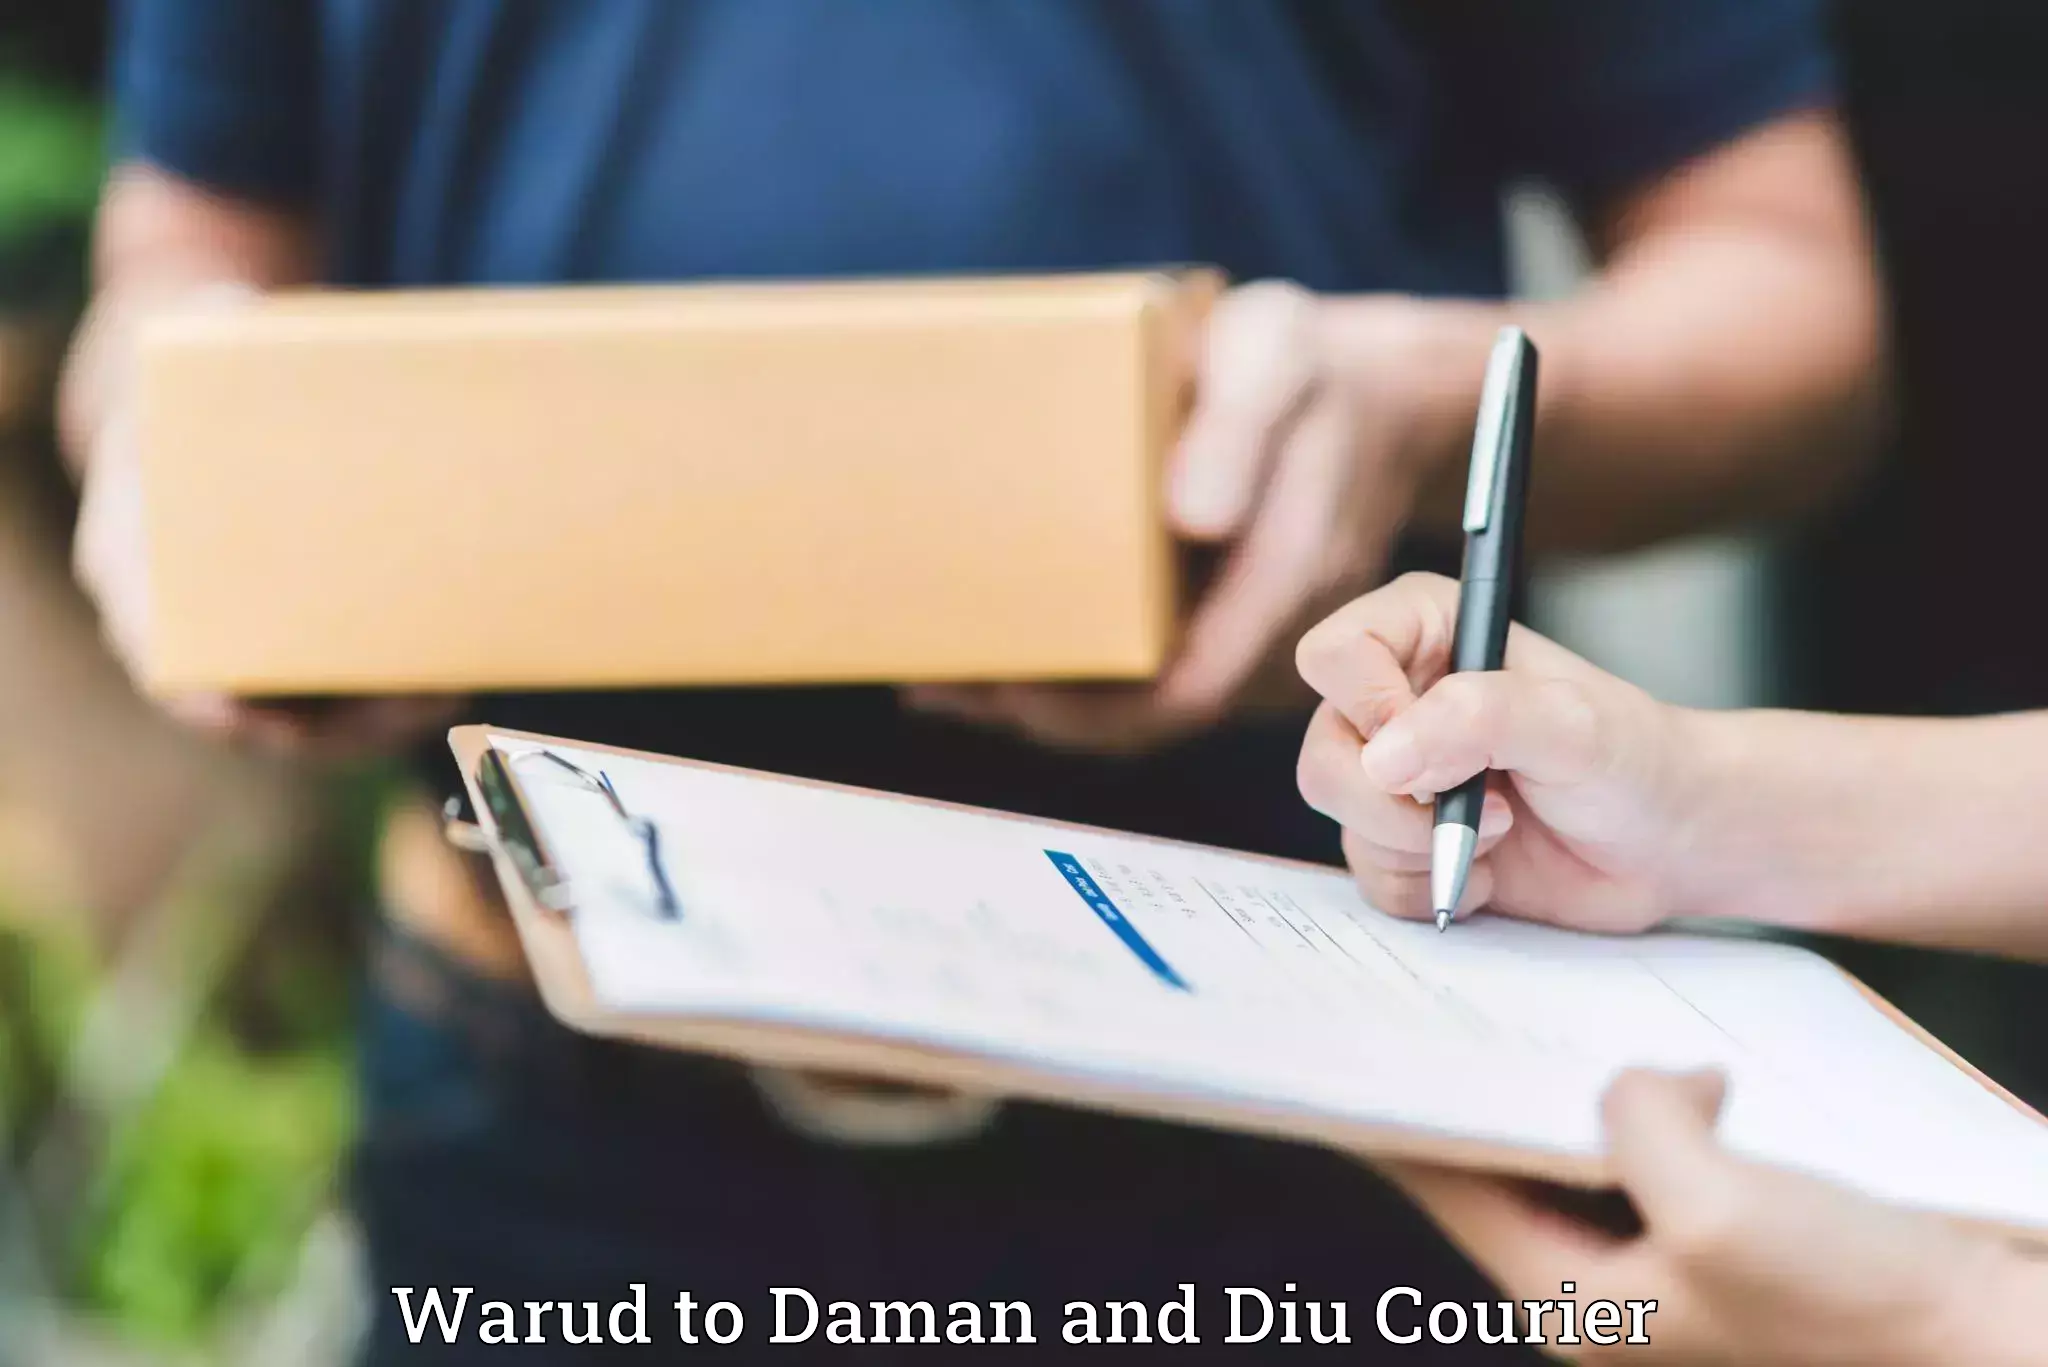 Baggage shipping service Warud to Daman and Diu